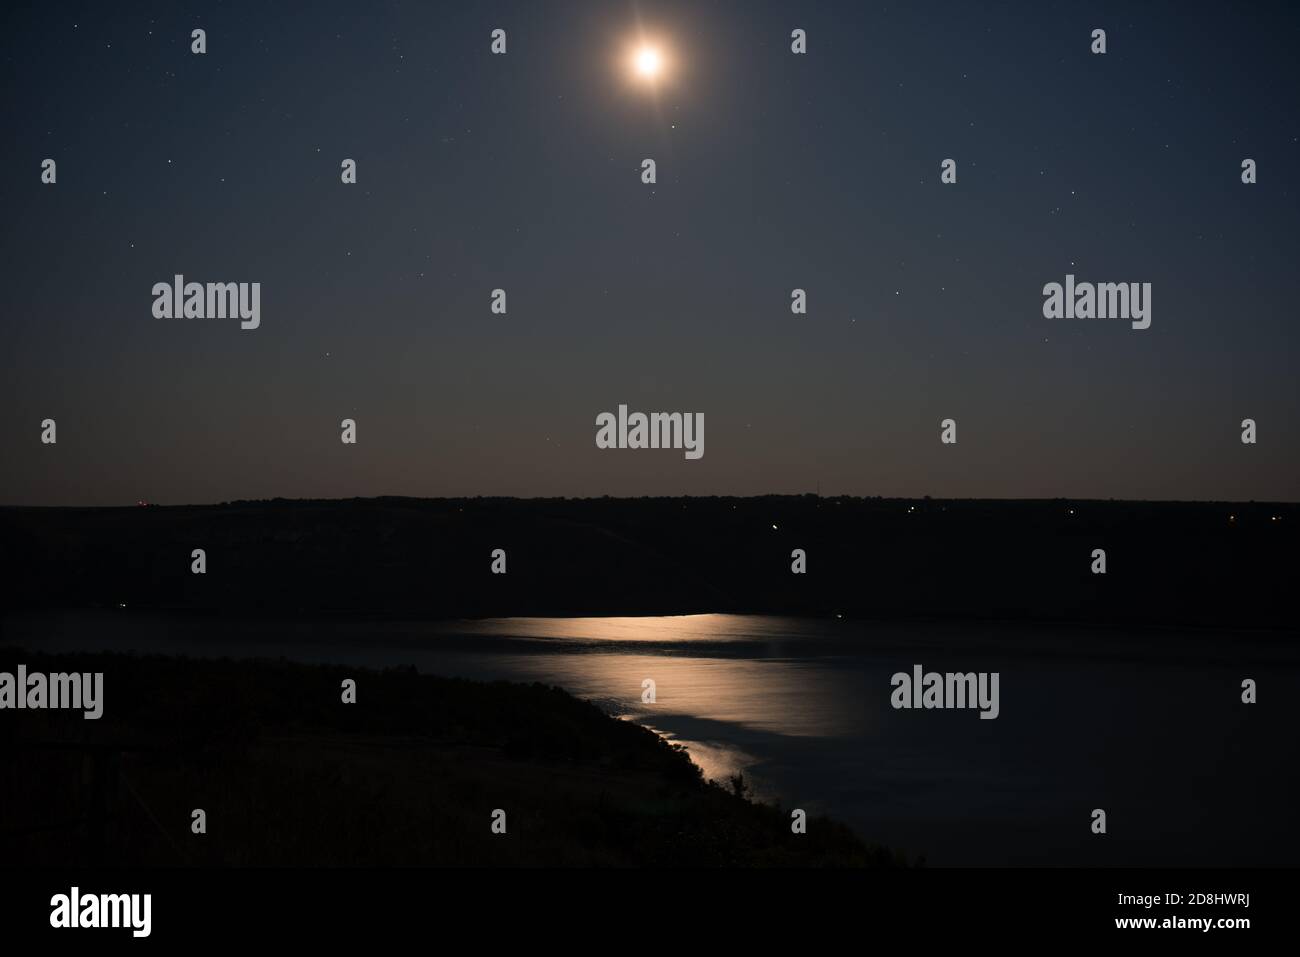 lunga esposizione notturna fotografia di cielo stellato, luna e fiume Foto Stock